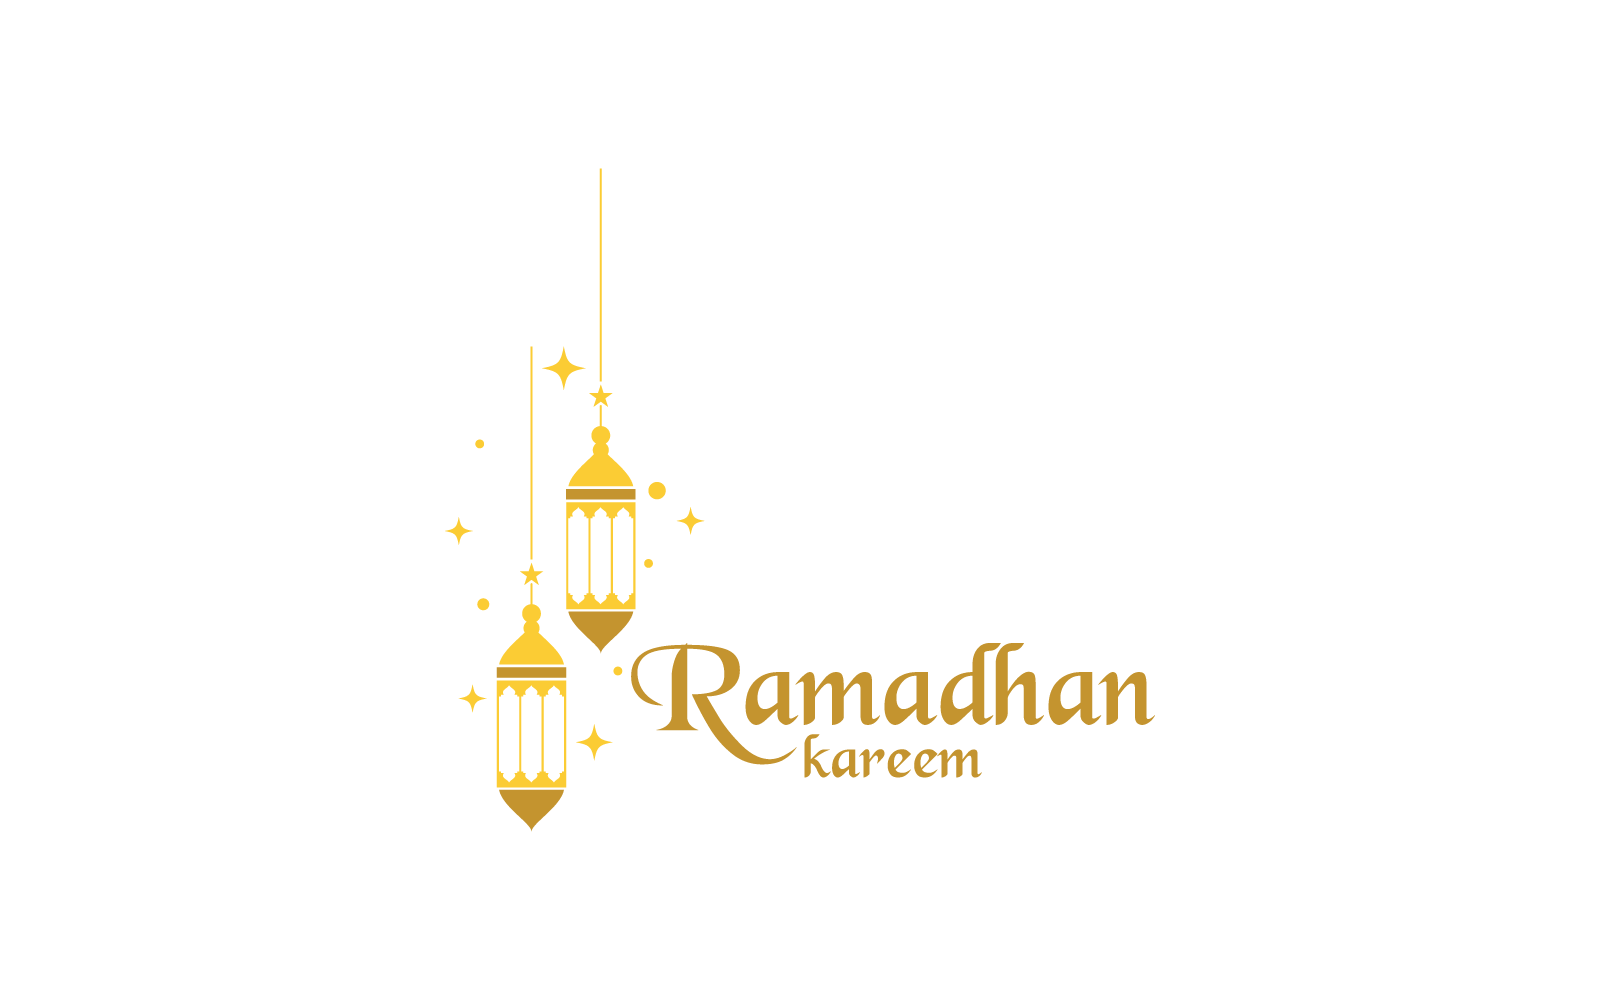 Modelo de vetor de ícone de logotipo Ramadhan kareem